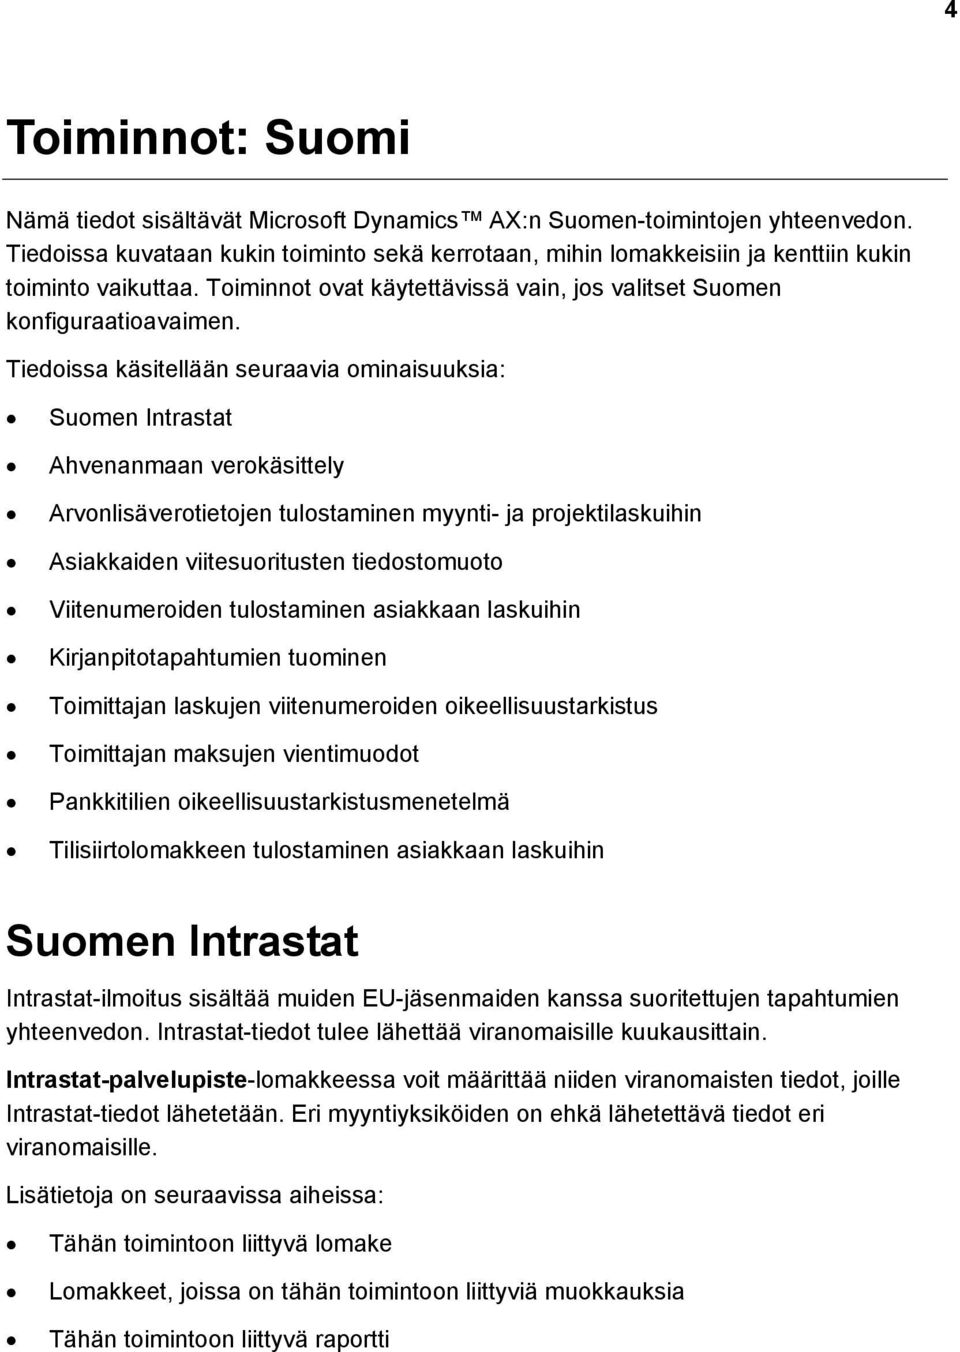 Tiedoissa käsitellään seuraavia ominaisuuksia: Suomen Intrastat Ahvenanmaan verokäsittely Arvonlisäverotietojen tulostaminen myynti- ja projektilaskuihin Asiakkaiden viitesuoritusten tiedostomuoto